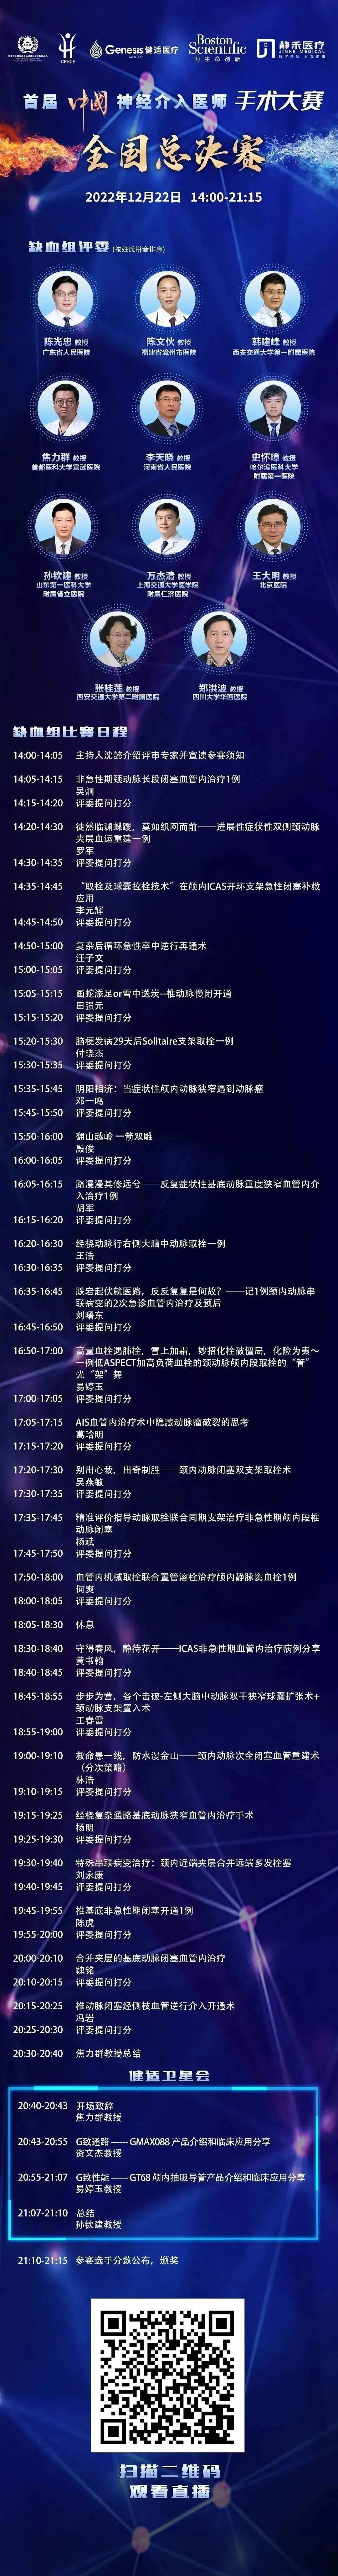 【曲播预告】首届中国神经介入医师手术大赛总决赛浩大开幕 12月22日14:00出色继续